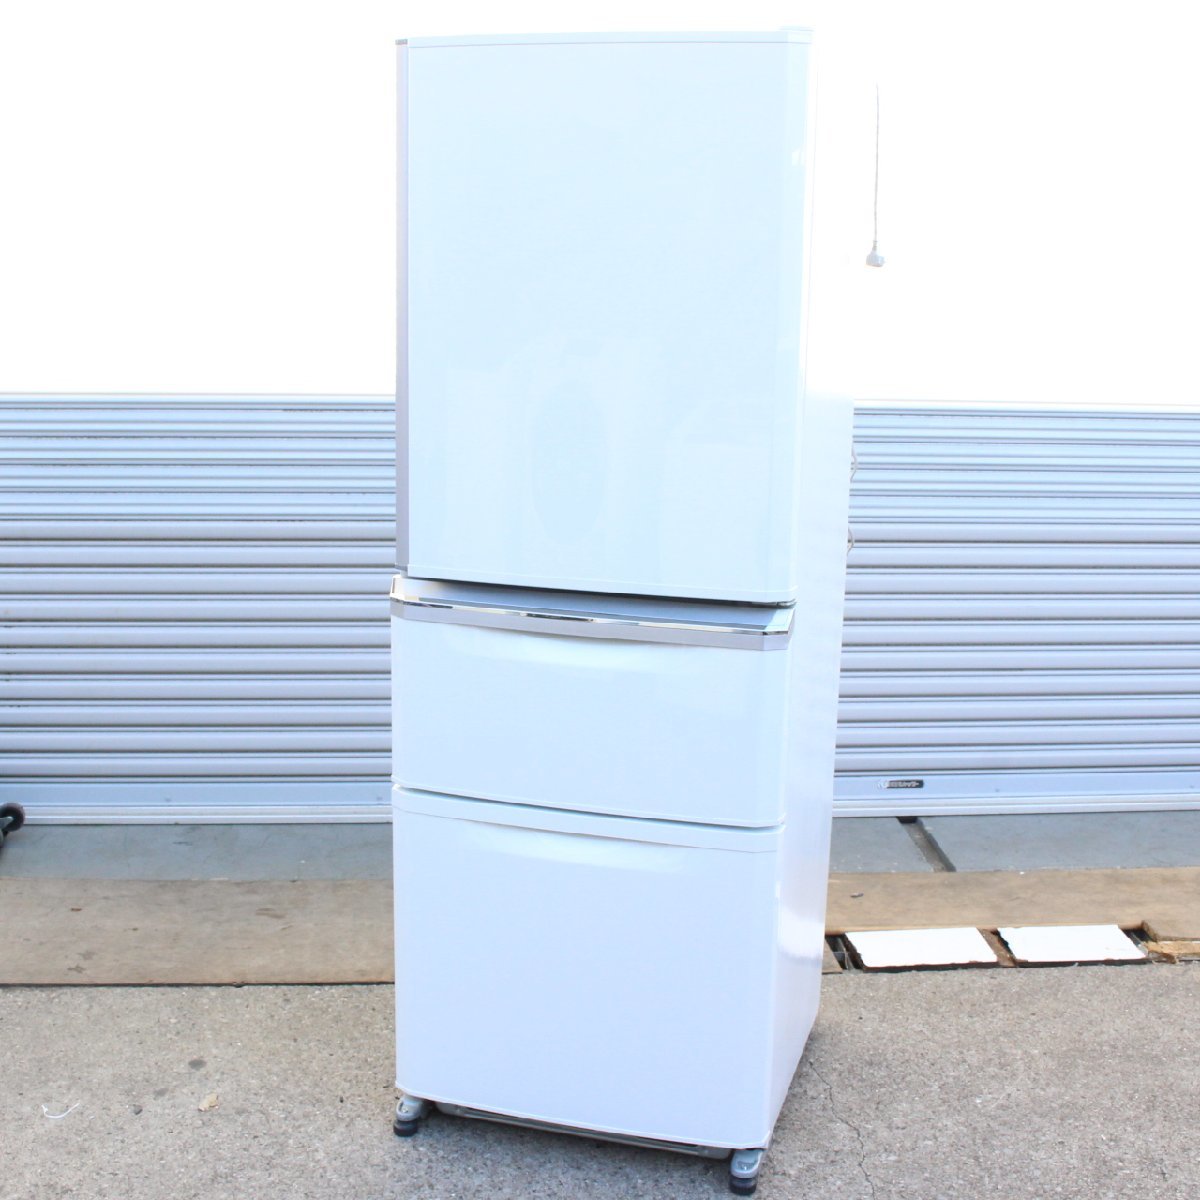 川崎市高津区にて 三菱 ノンフロン冷凍冷蔵庫 MR-C34Z-W1 2016年製 を出張買取させて頂きました。